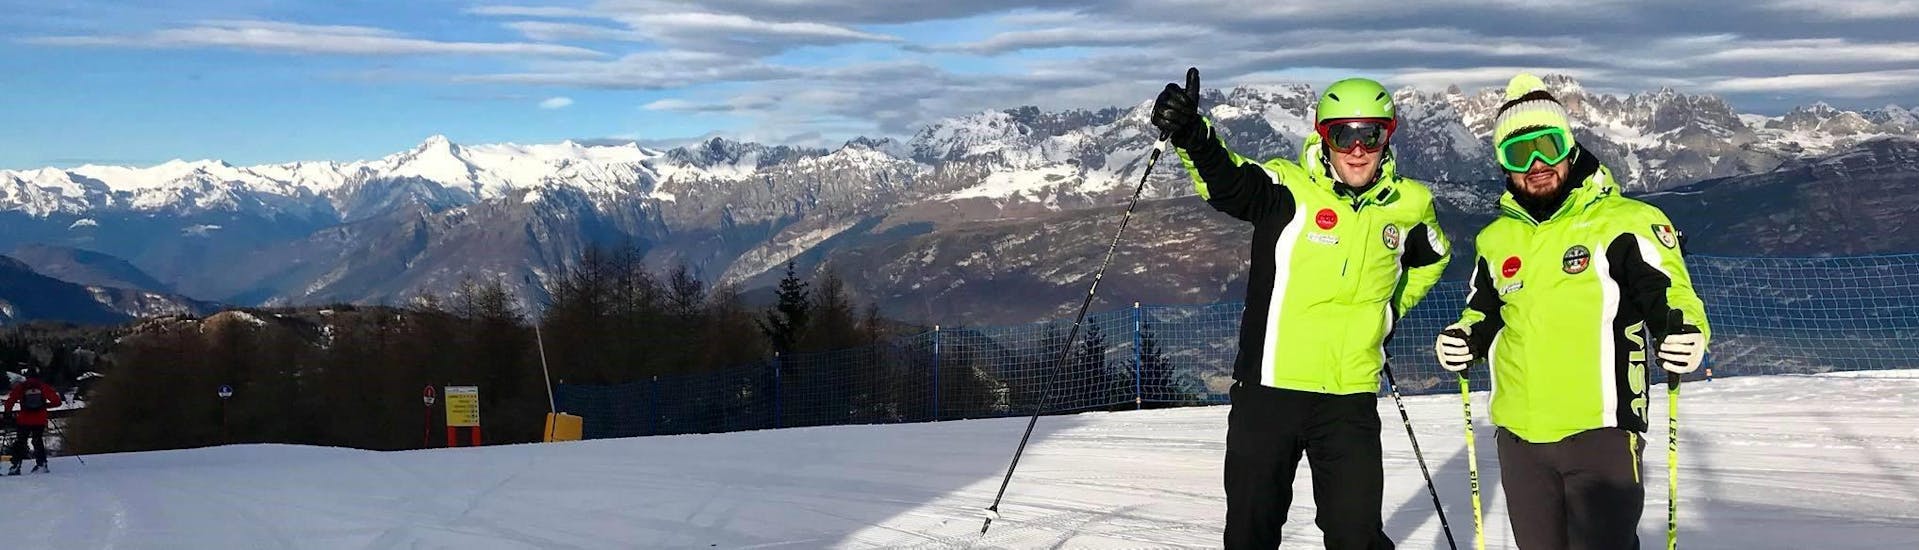 Privé skilessen voor volwassenen vanaf 14 jaar voor alle niveaus.